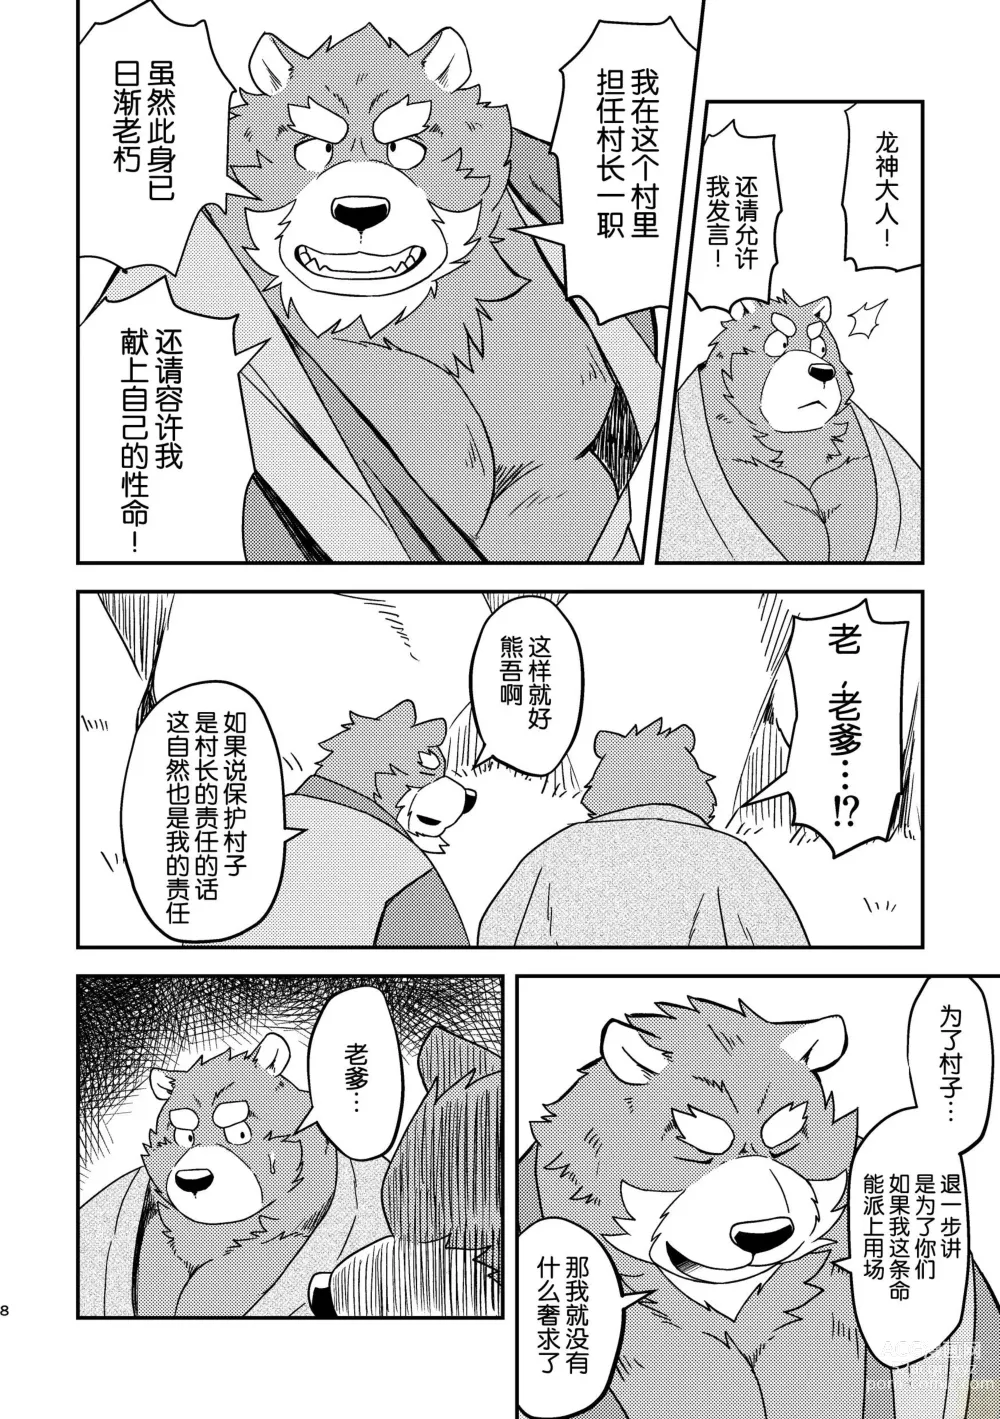 Page 8 of doujinshi SACRIFICE